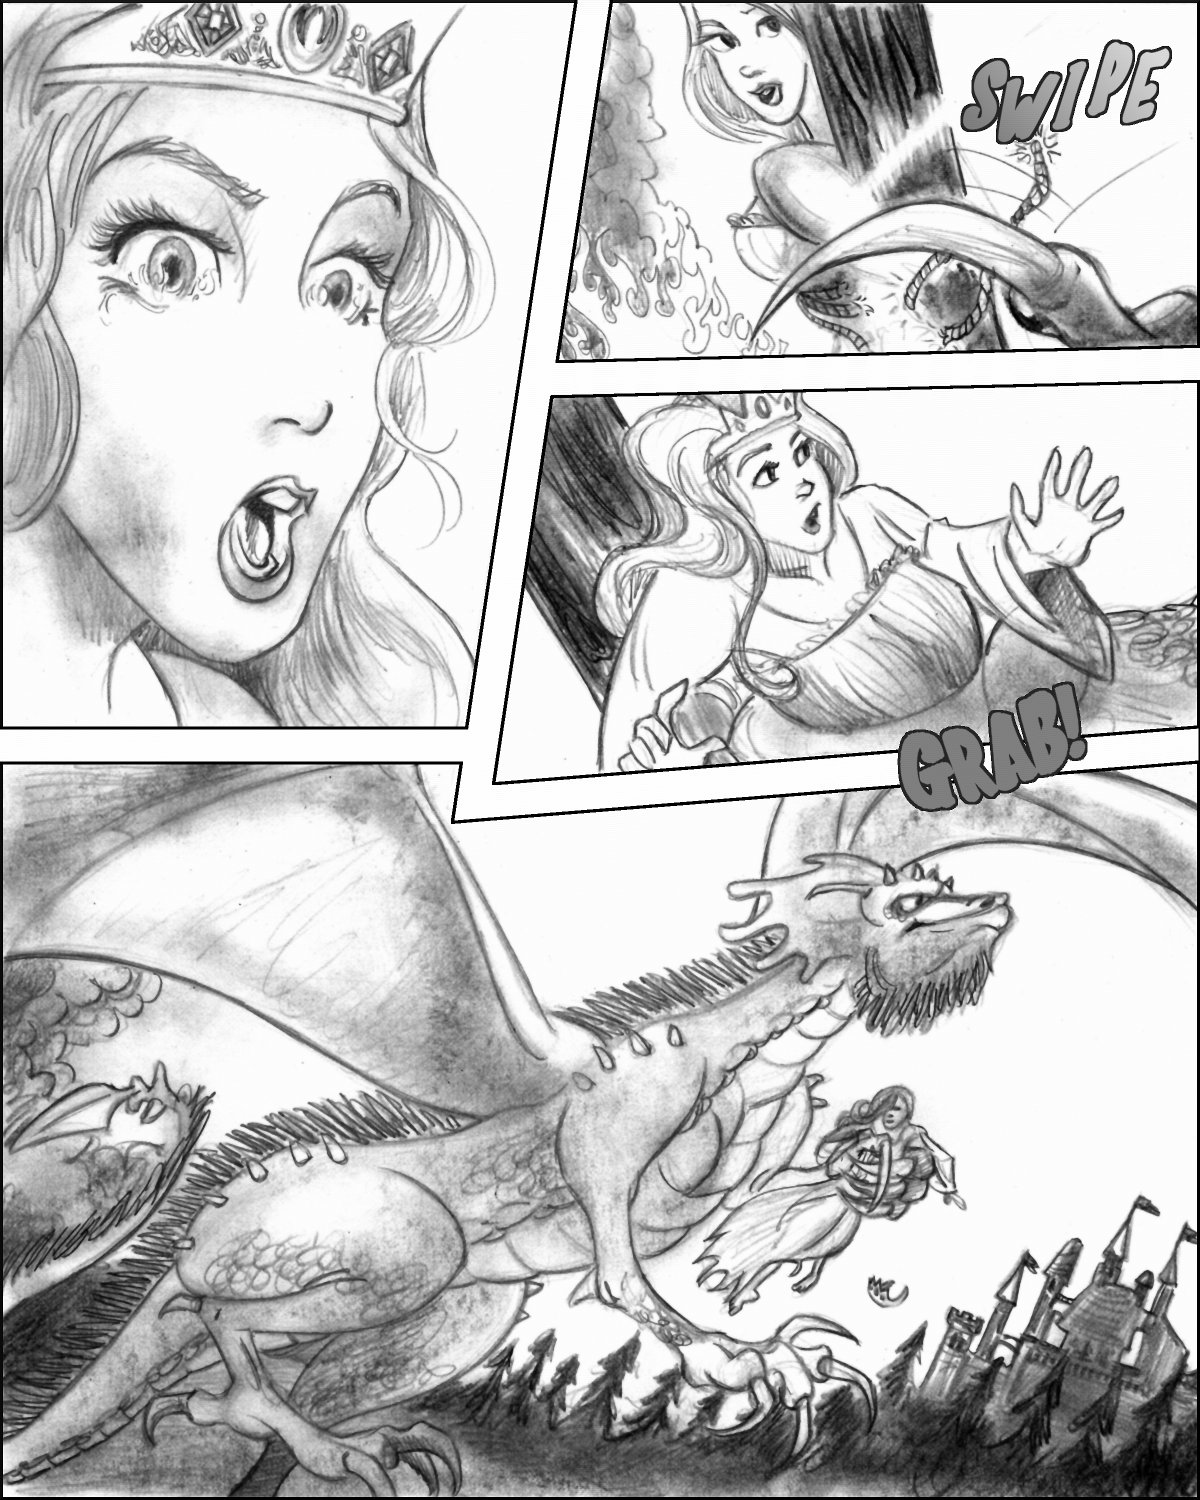 Nanetta swiped by a dragon!